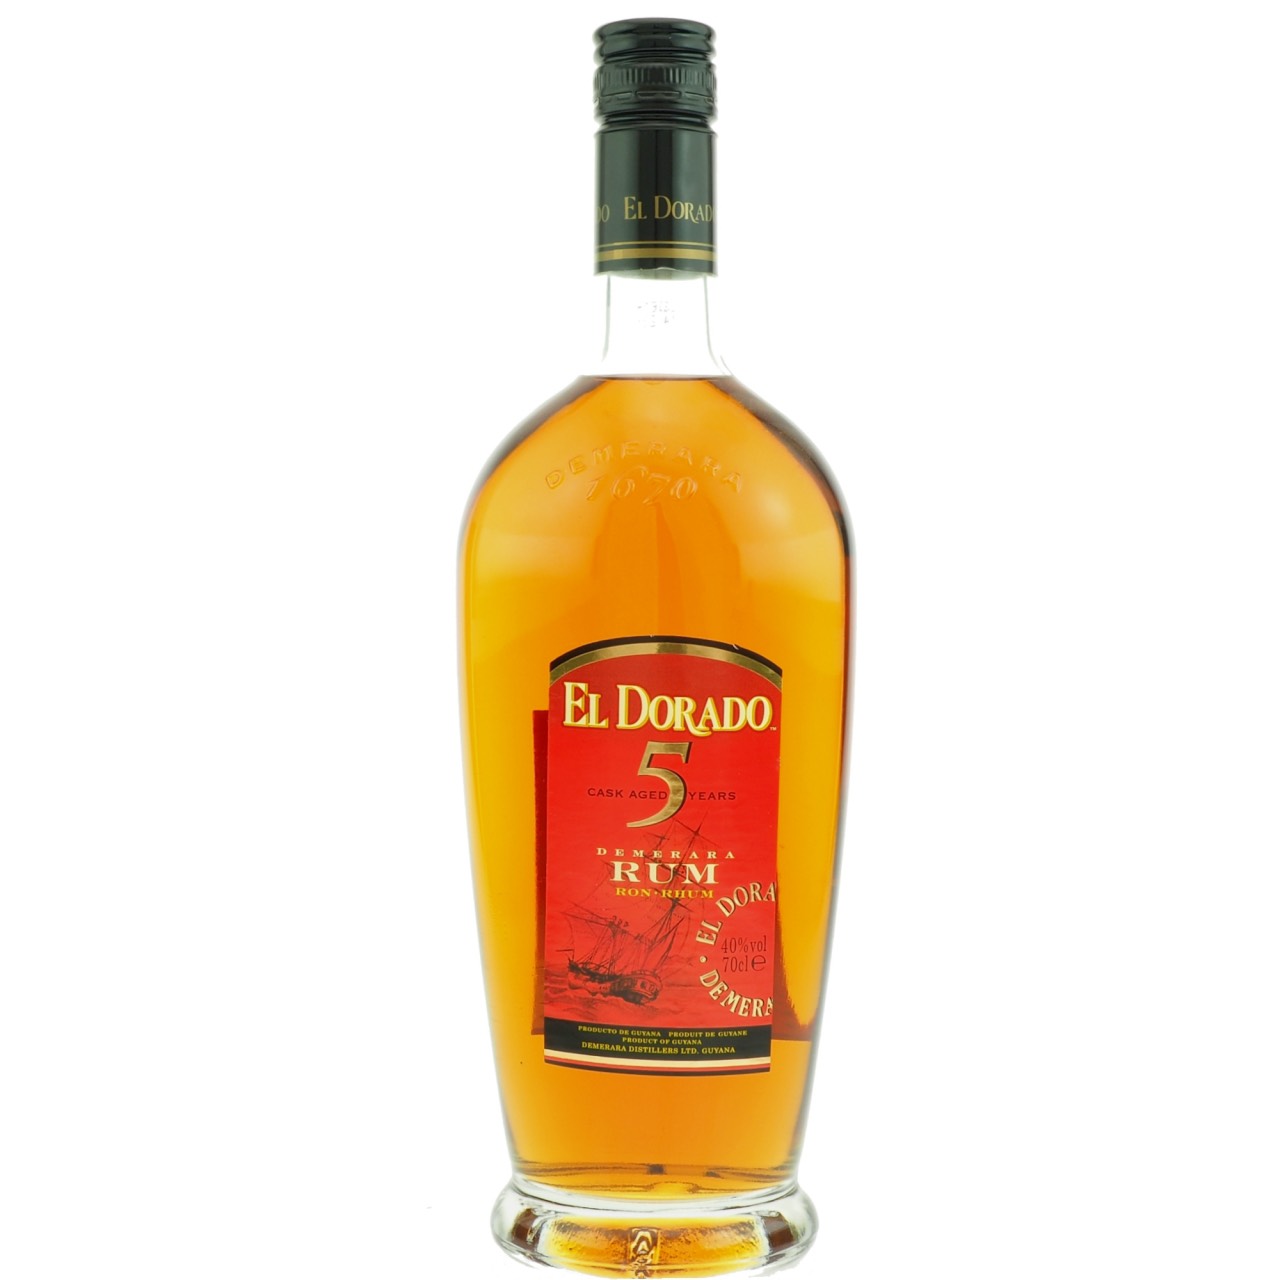 Bottle image of El Dorado 5